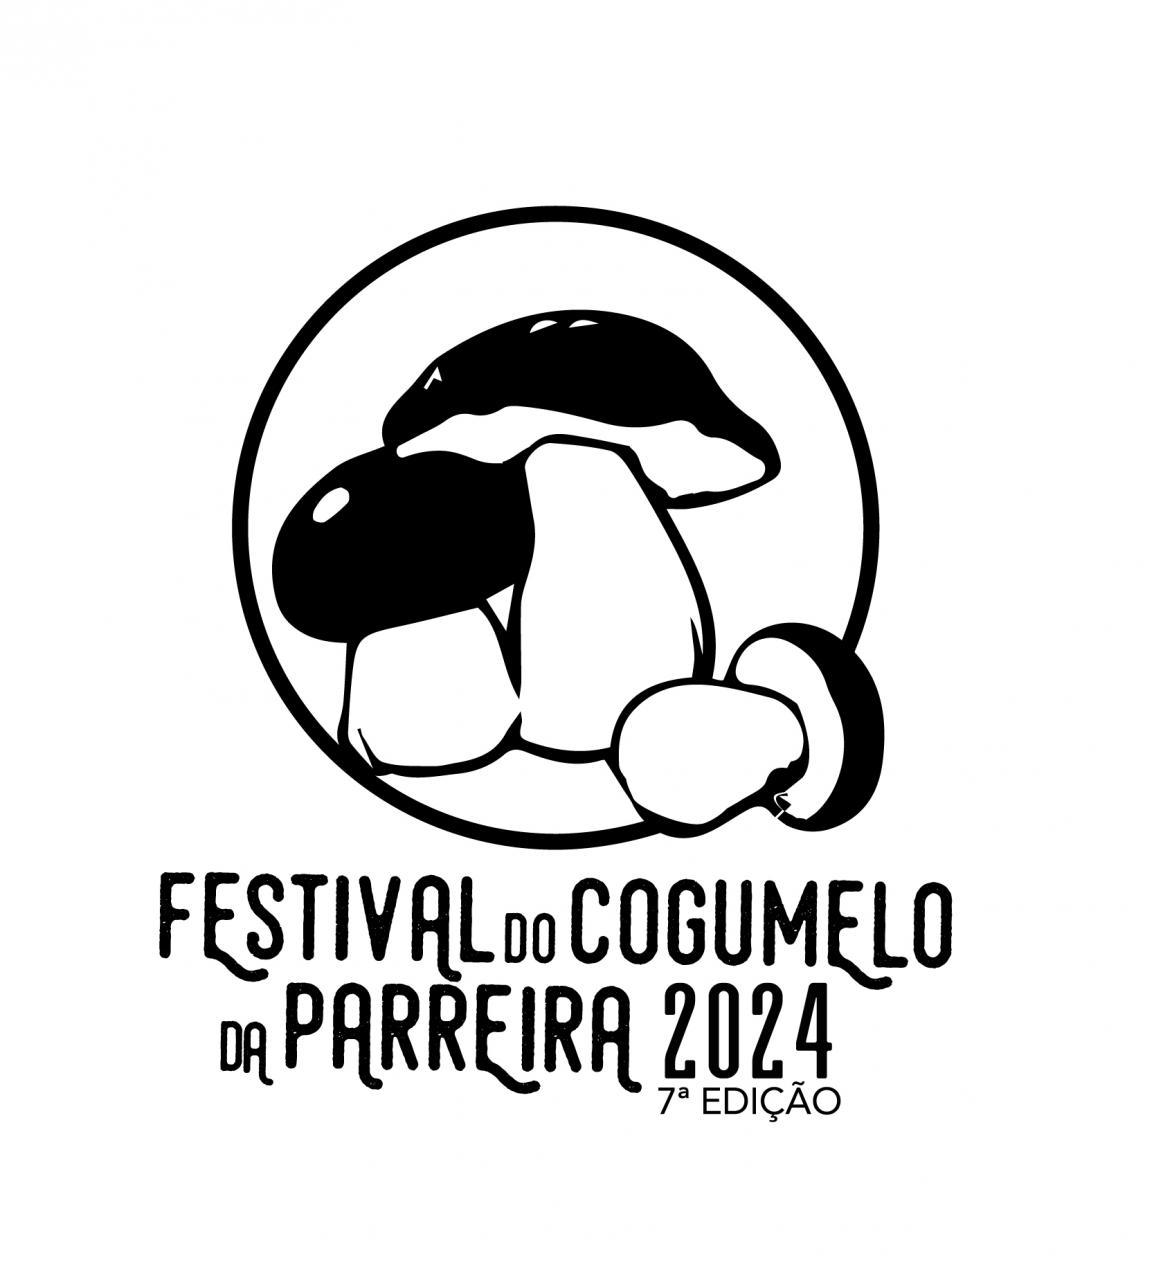 Festival do Cogumelo da Parreira 2024